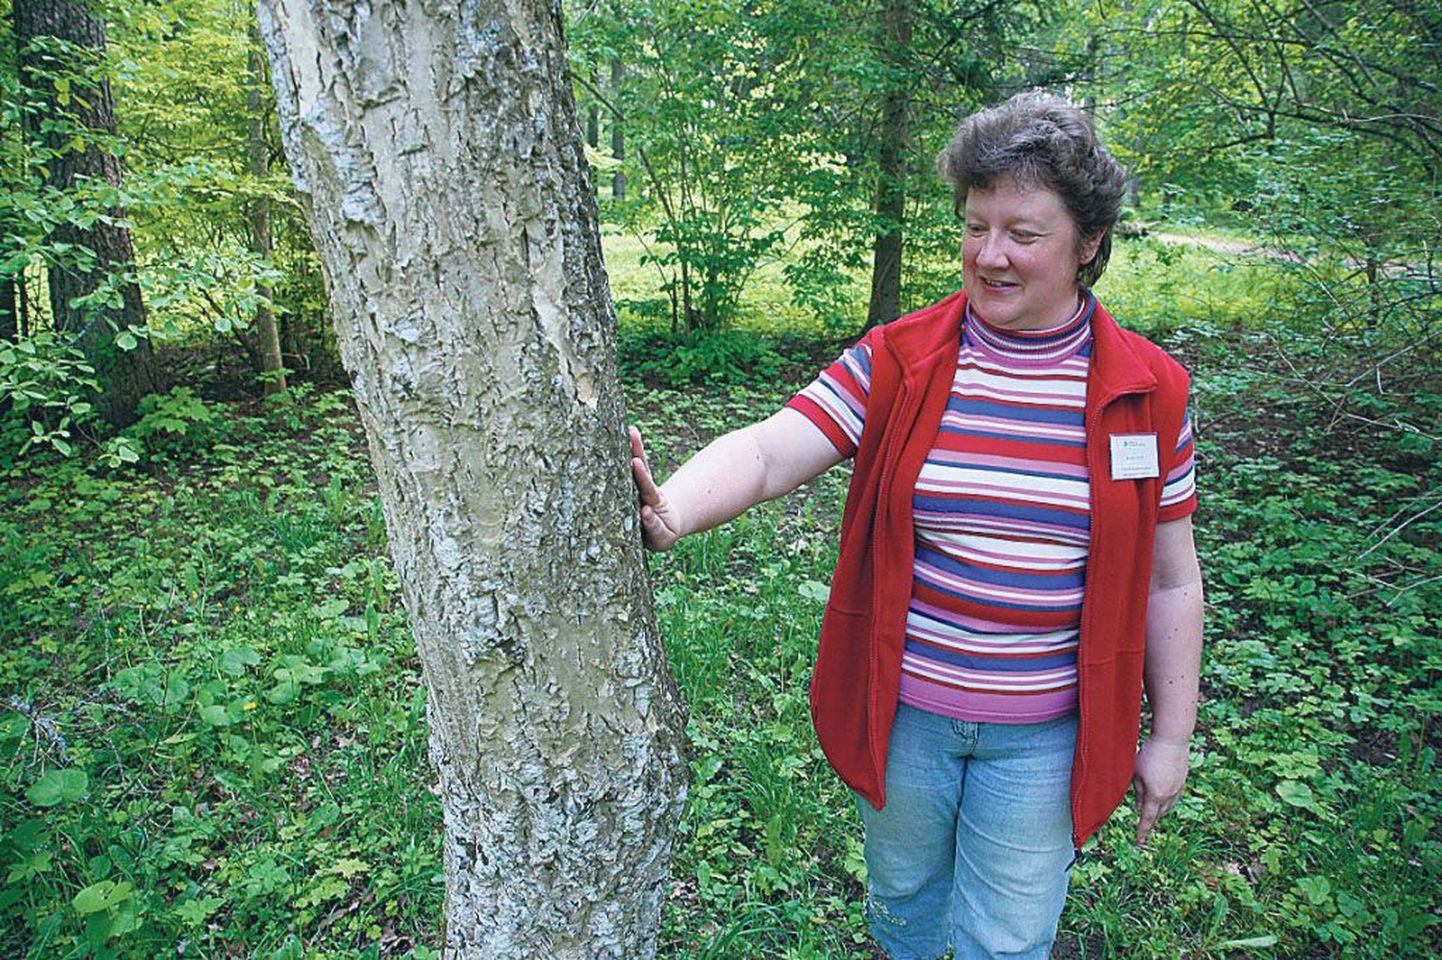 Kutseõpetaja Kaja Hiie soovitas Voltveti pargis üles otsida Amuuri korgipuu ja seda käega katsuda. Puu on tõepoolest üllatavalt pehme.